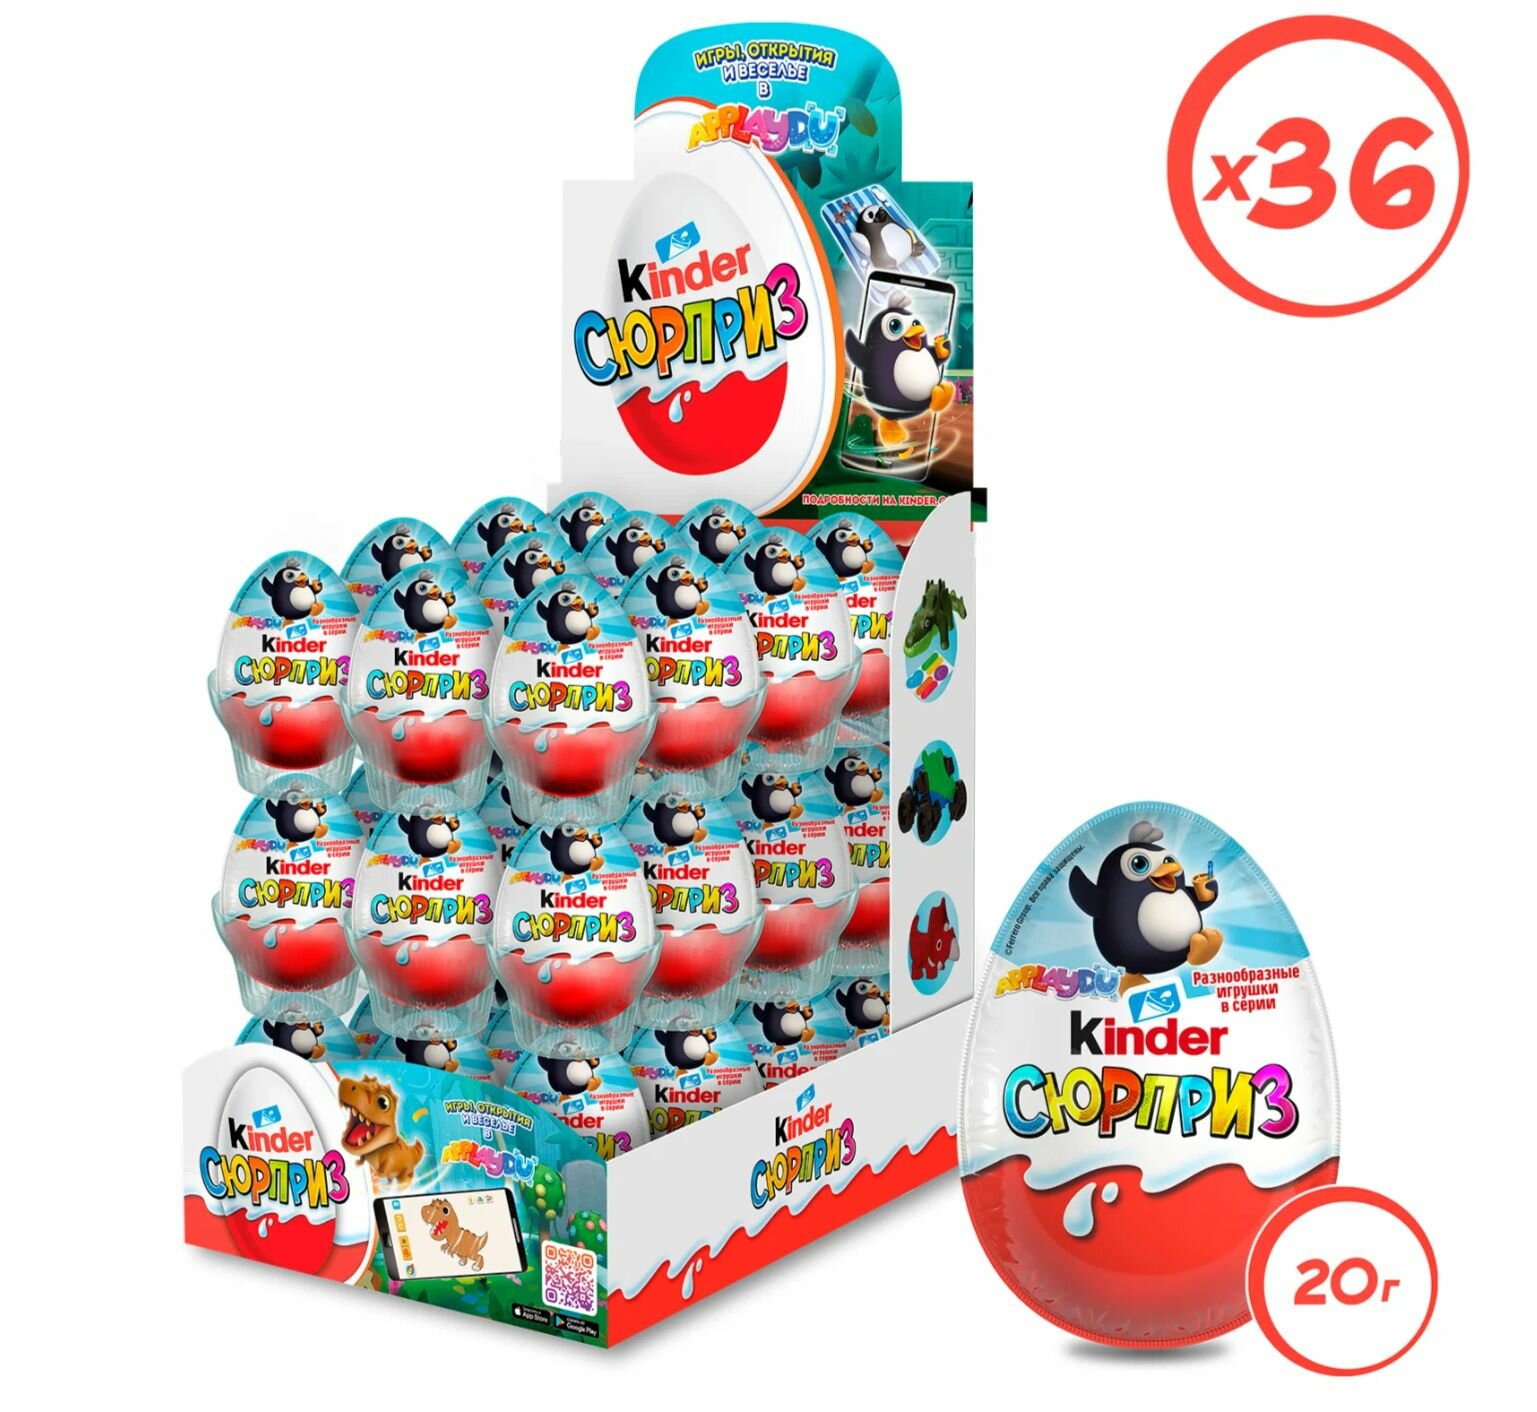 Шоколадное яйцо Kinder Сюрприз, серия Applaydu, коробка , 36 шт. в уп.